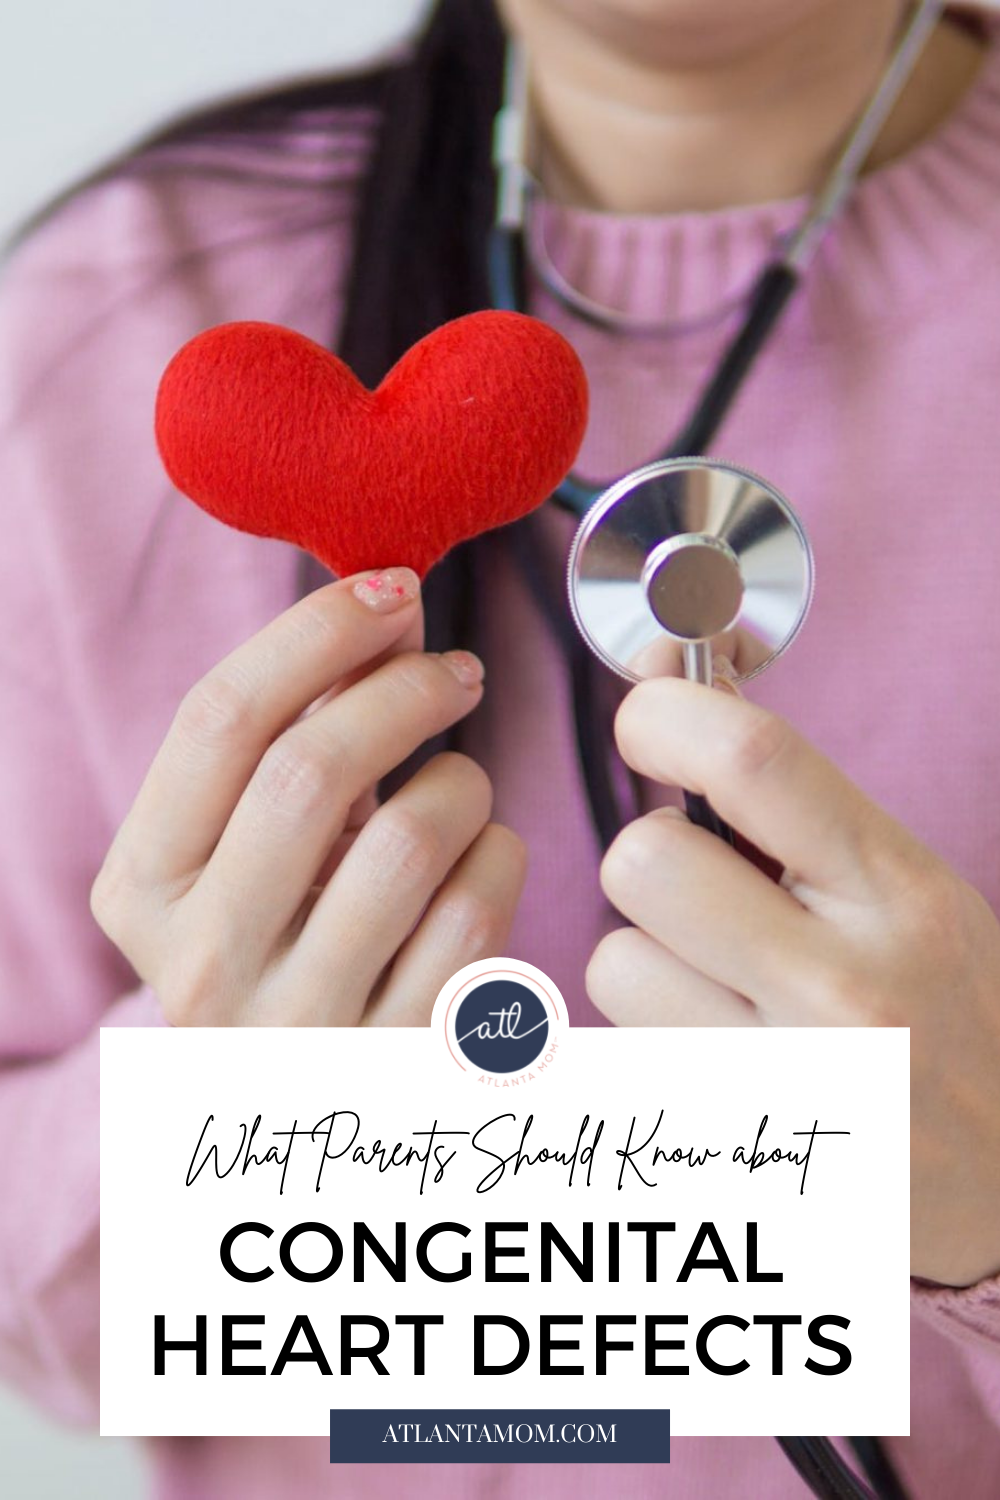 congenital heart defects